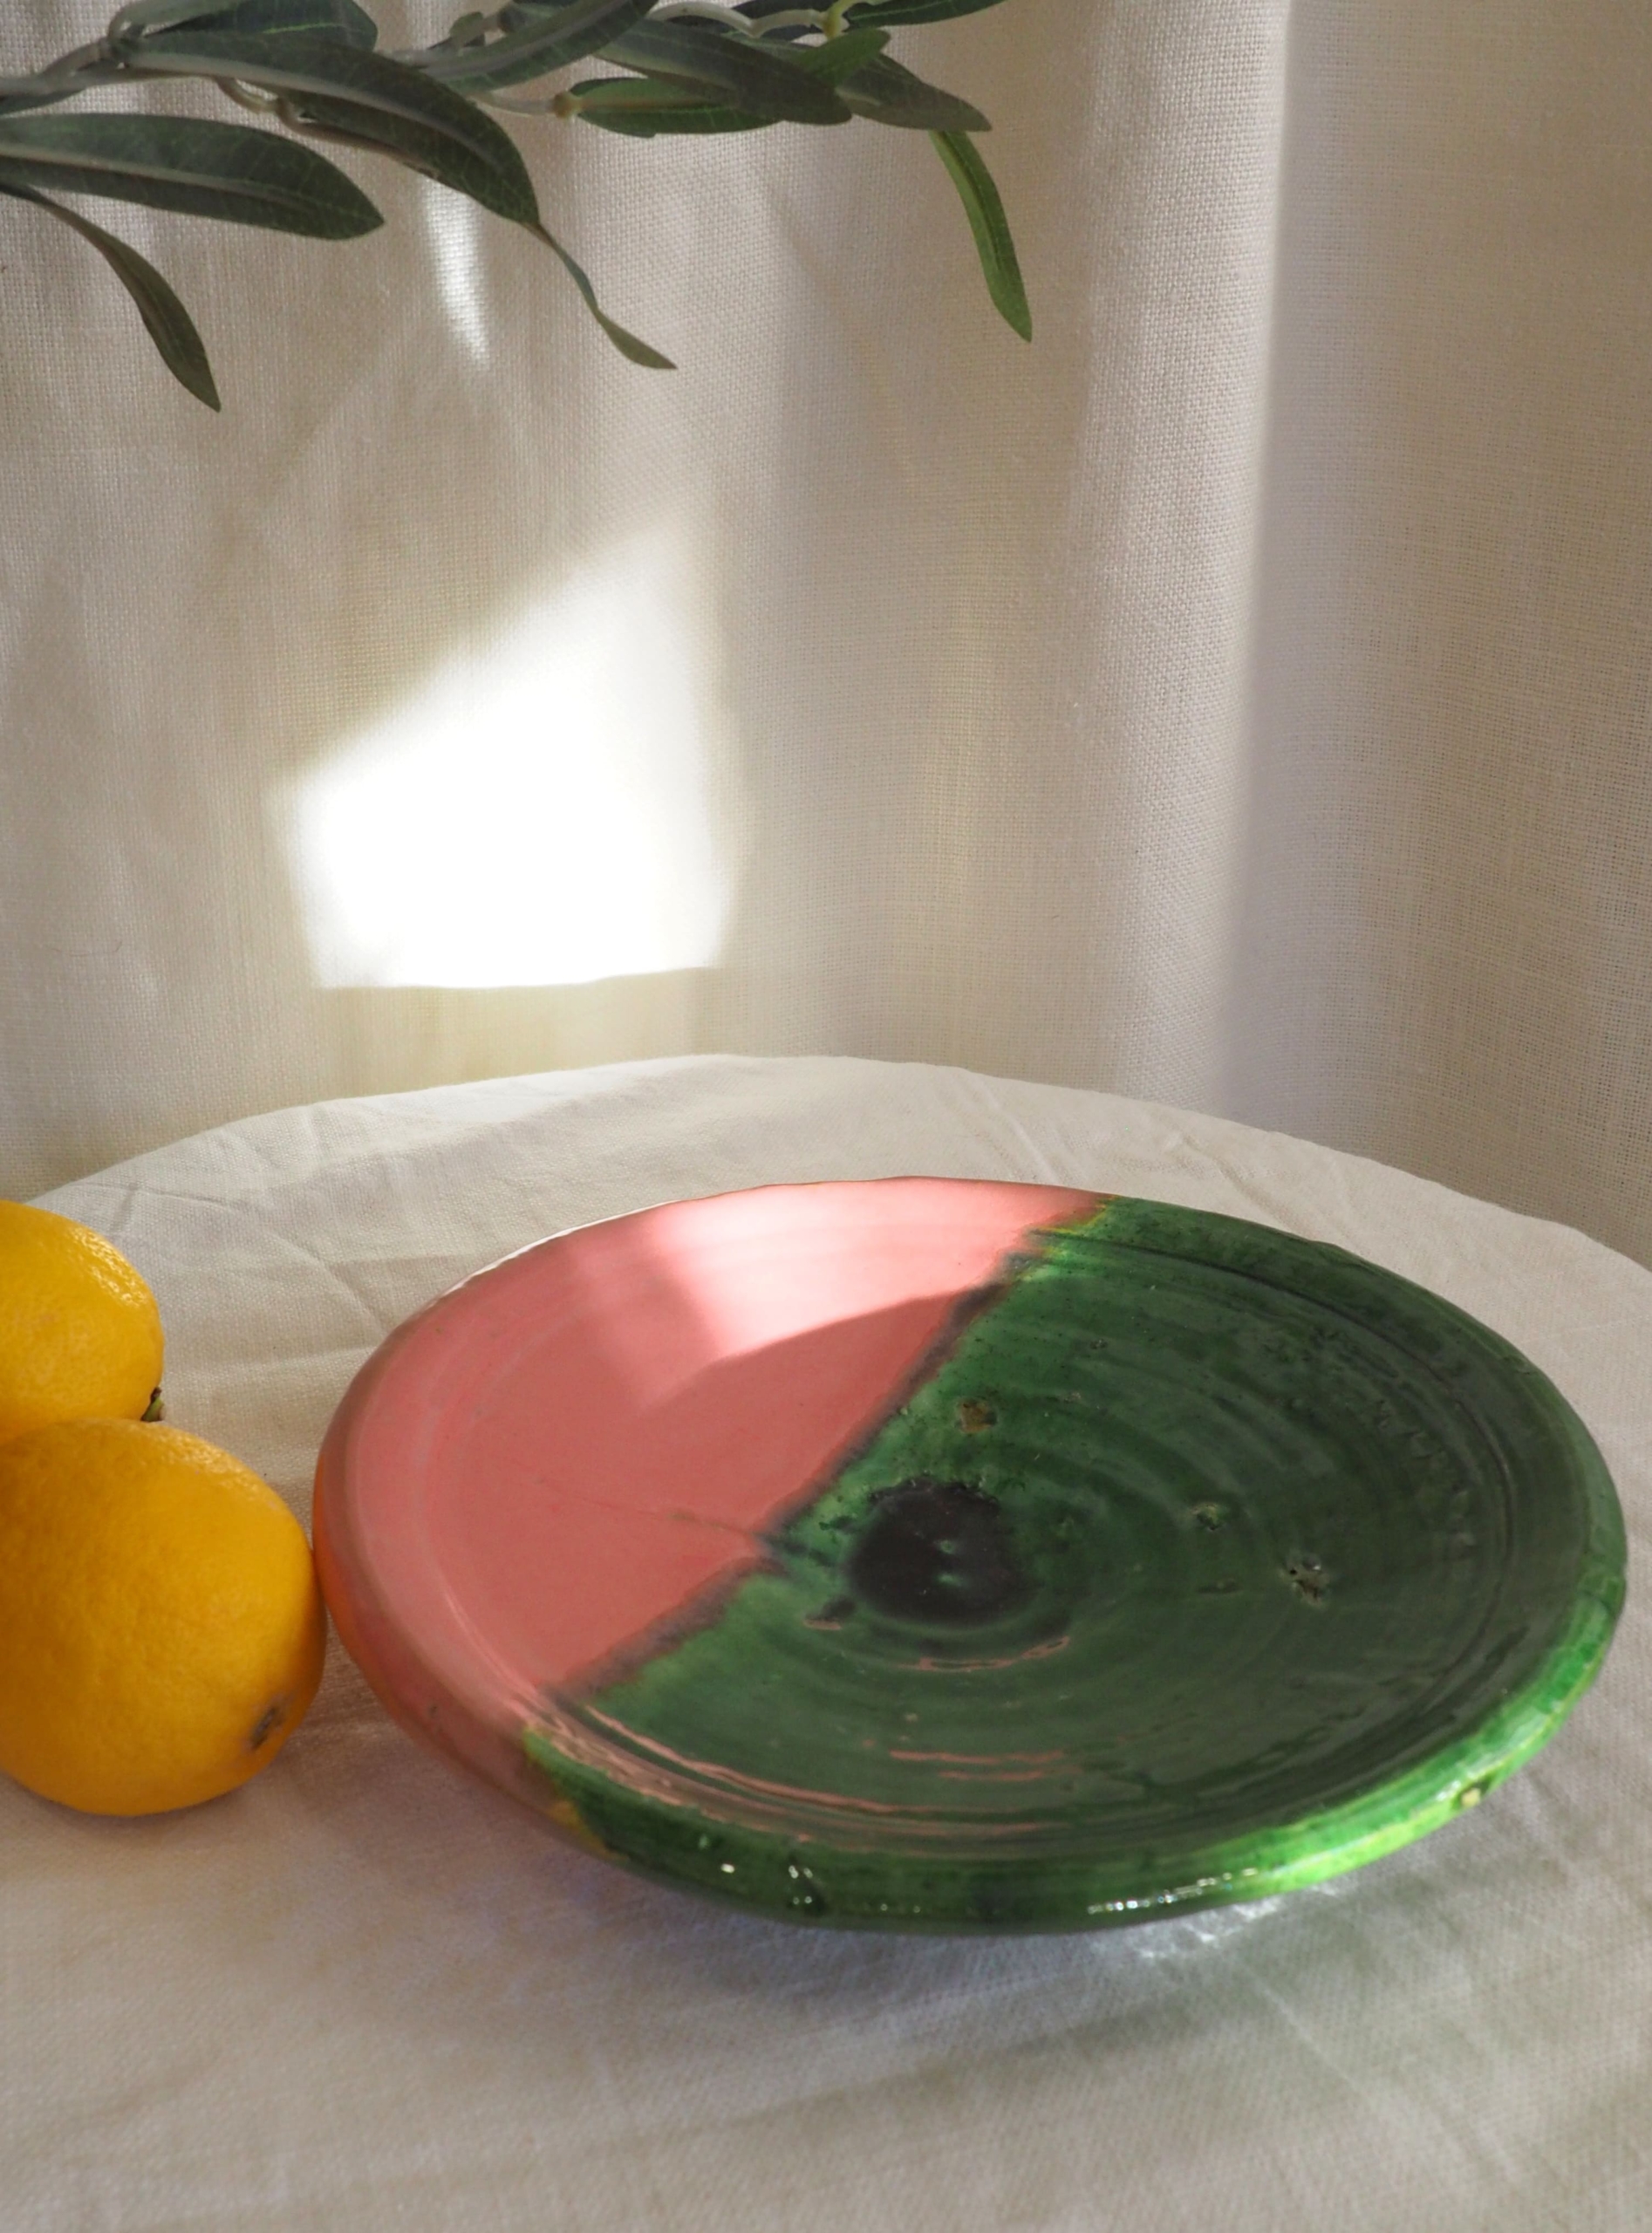 Vaisselle marocaine émaillée rose et verte de Tamegroute réalisée à la main